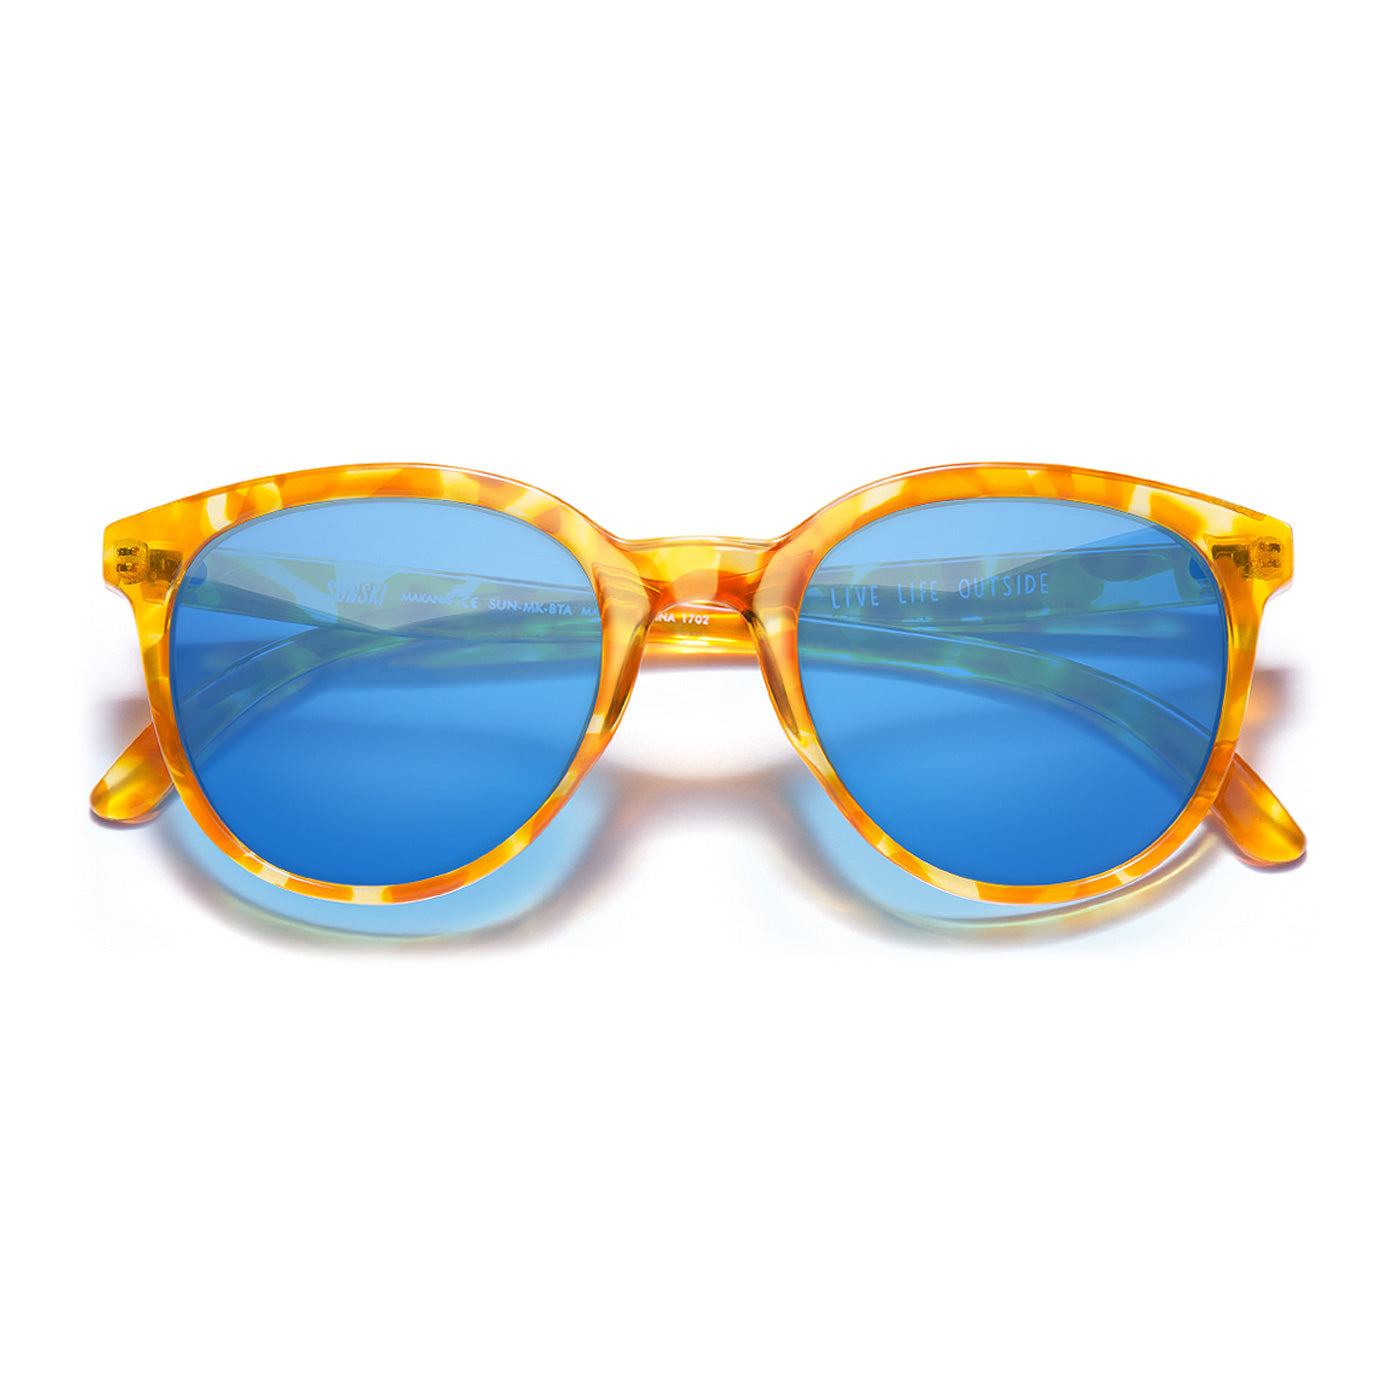 Makani Blonde Tortoise Blue lenses sunglasses by Sunski